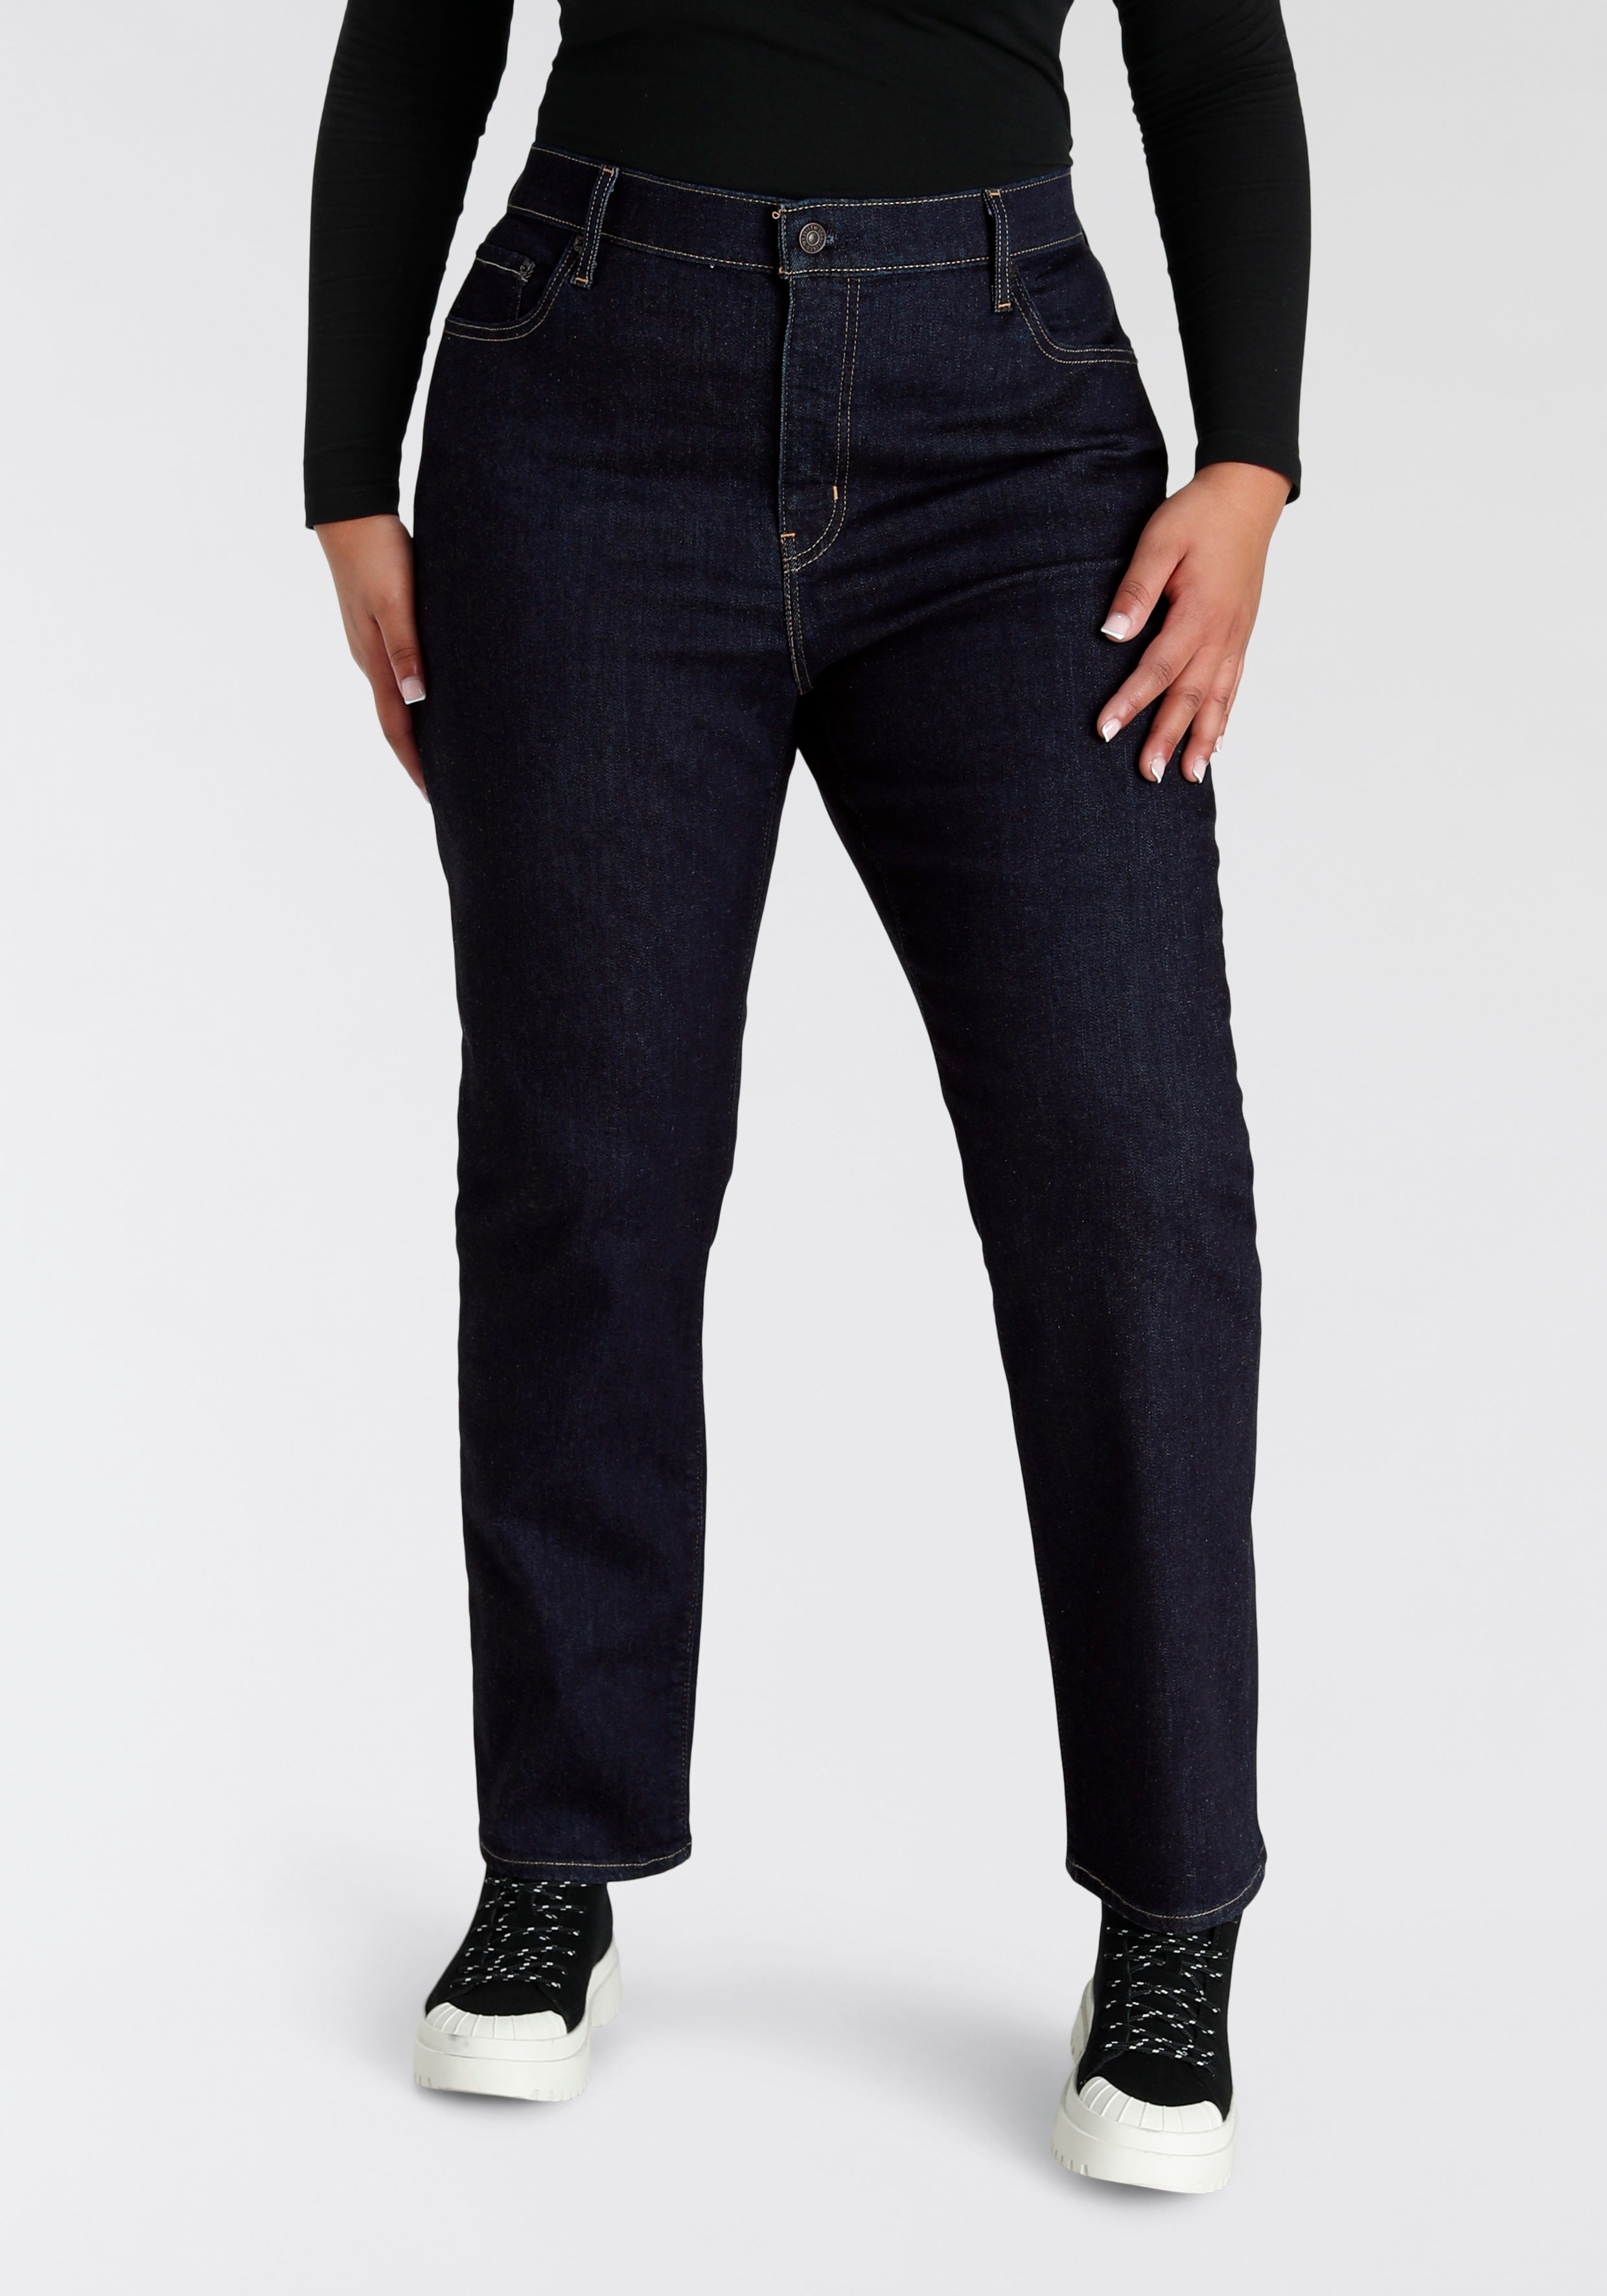 Straight-Jeans LEVI'S PLUS "724 PL HR STRAIGHT" Gr. 14 (44), Länge 30, schwarz (dark rinse) Damen Jeans Gerade